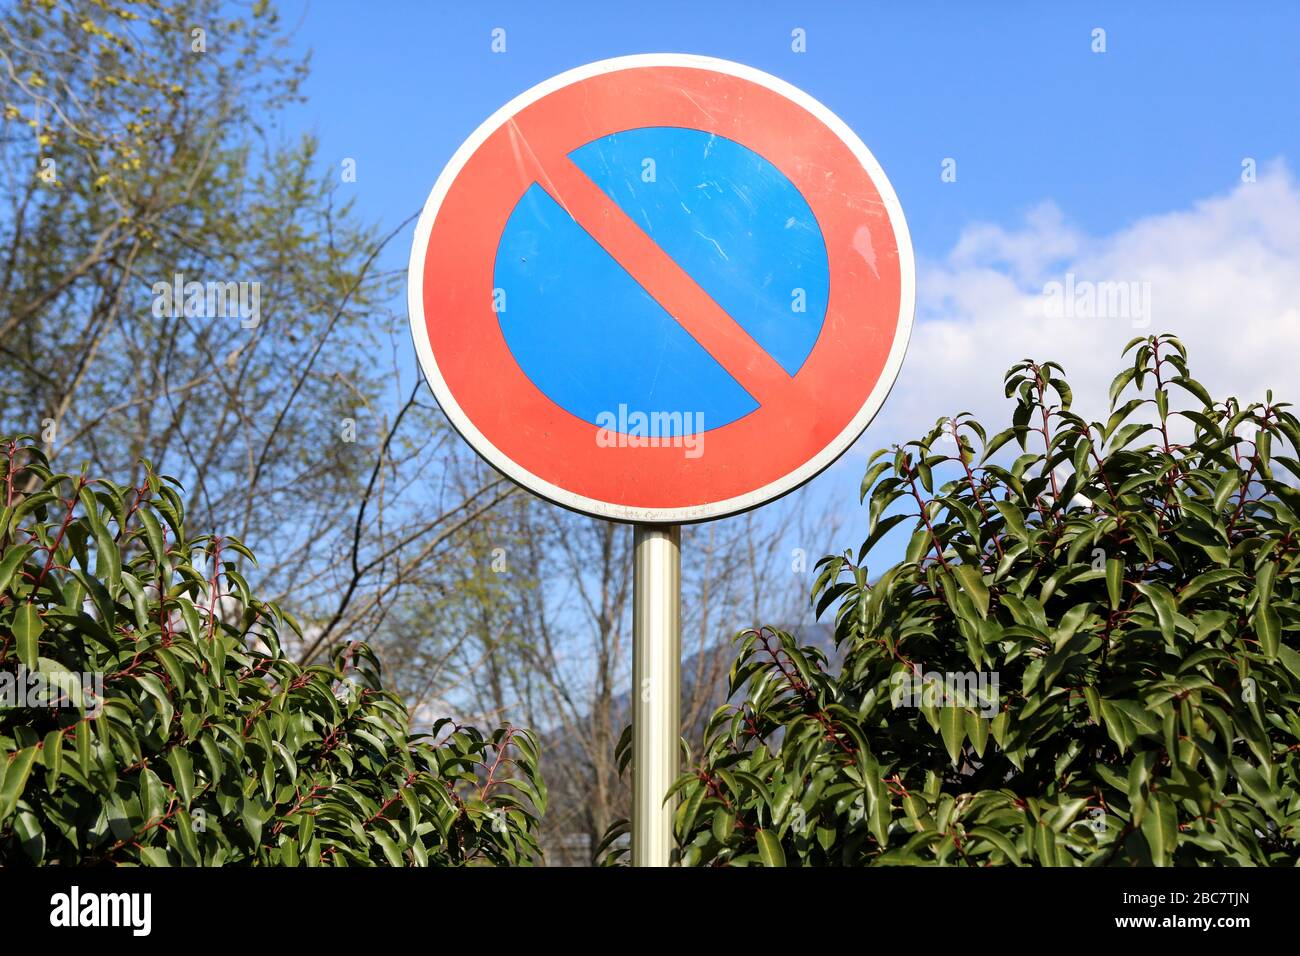 Interdiction de stationner. Panneau de signalisation. Saint-Gervais-les-Bains. Haute-Savoie. France. Stock Photo